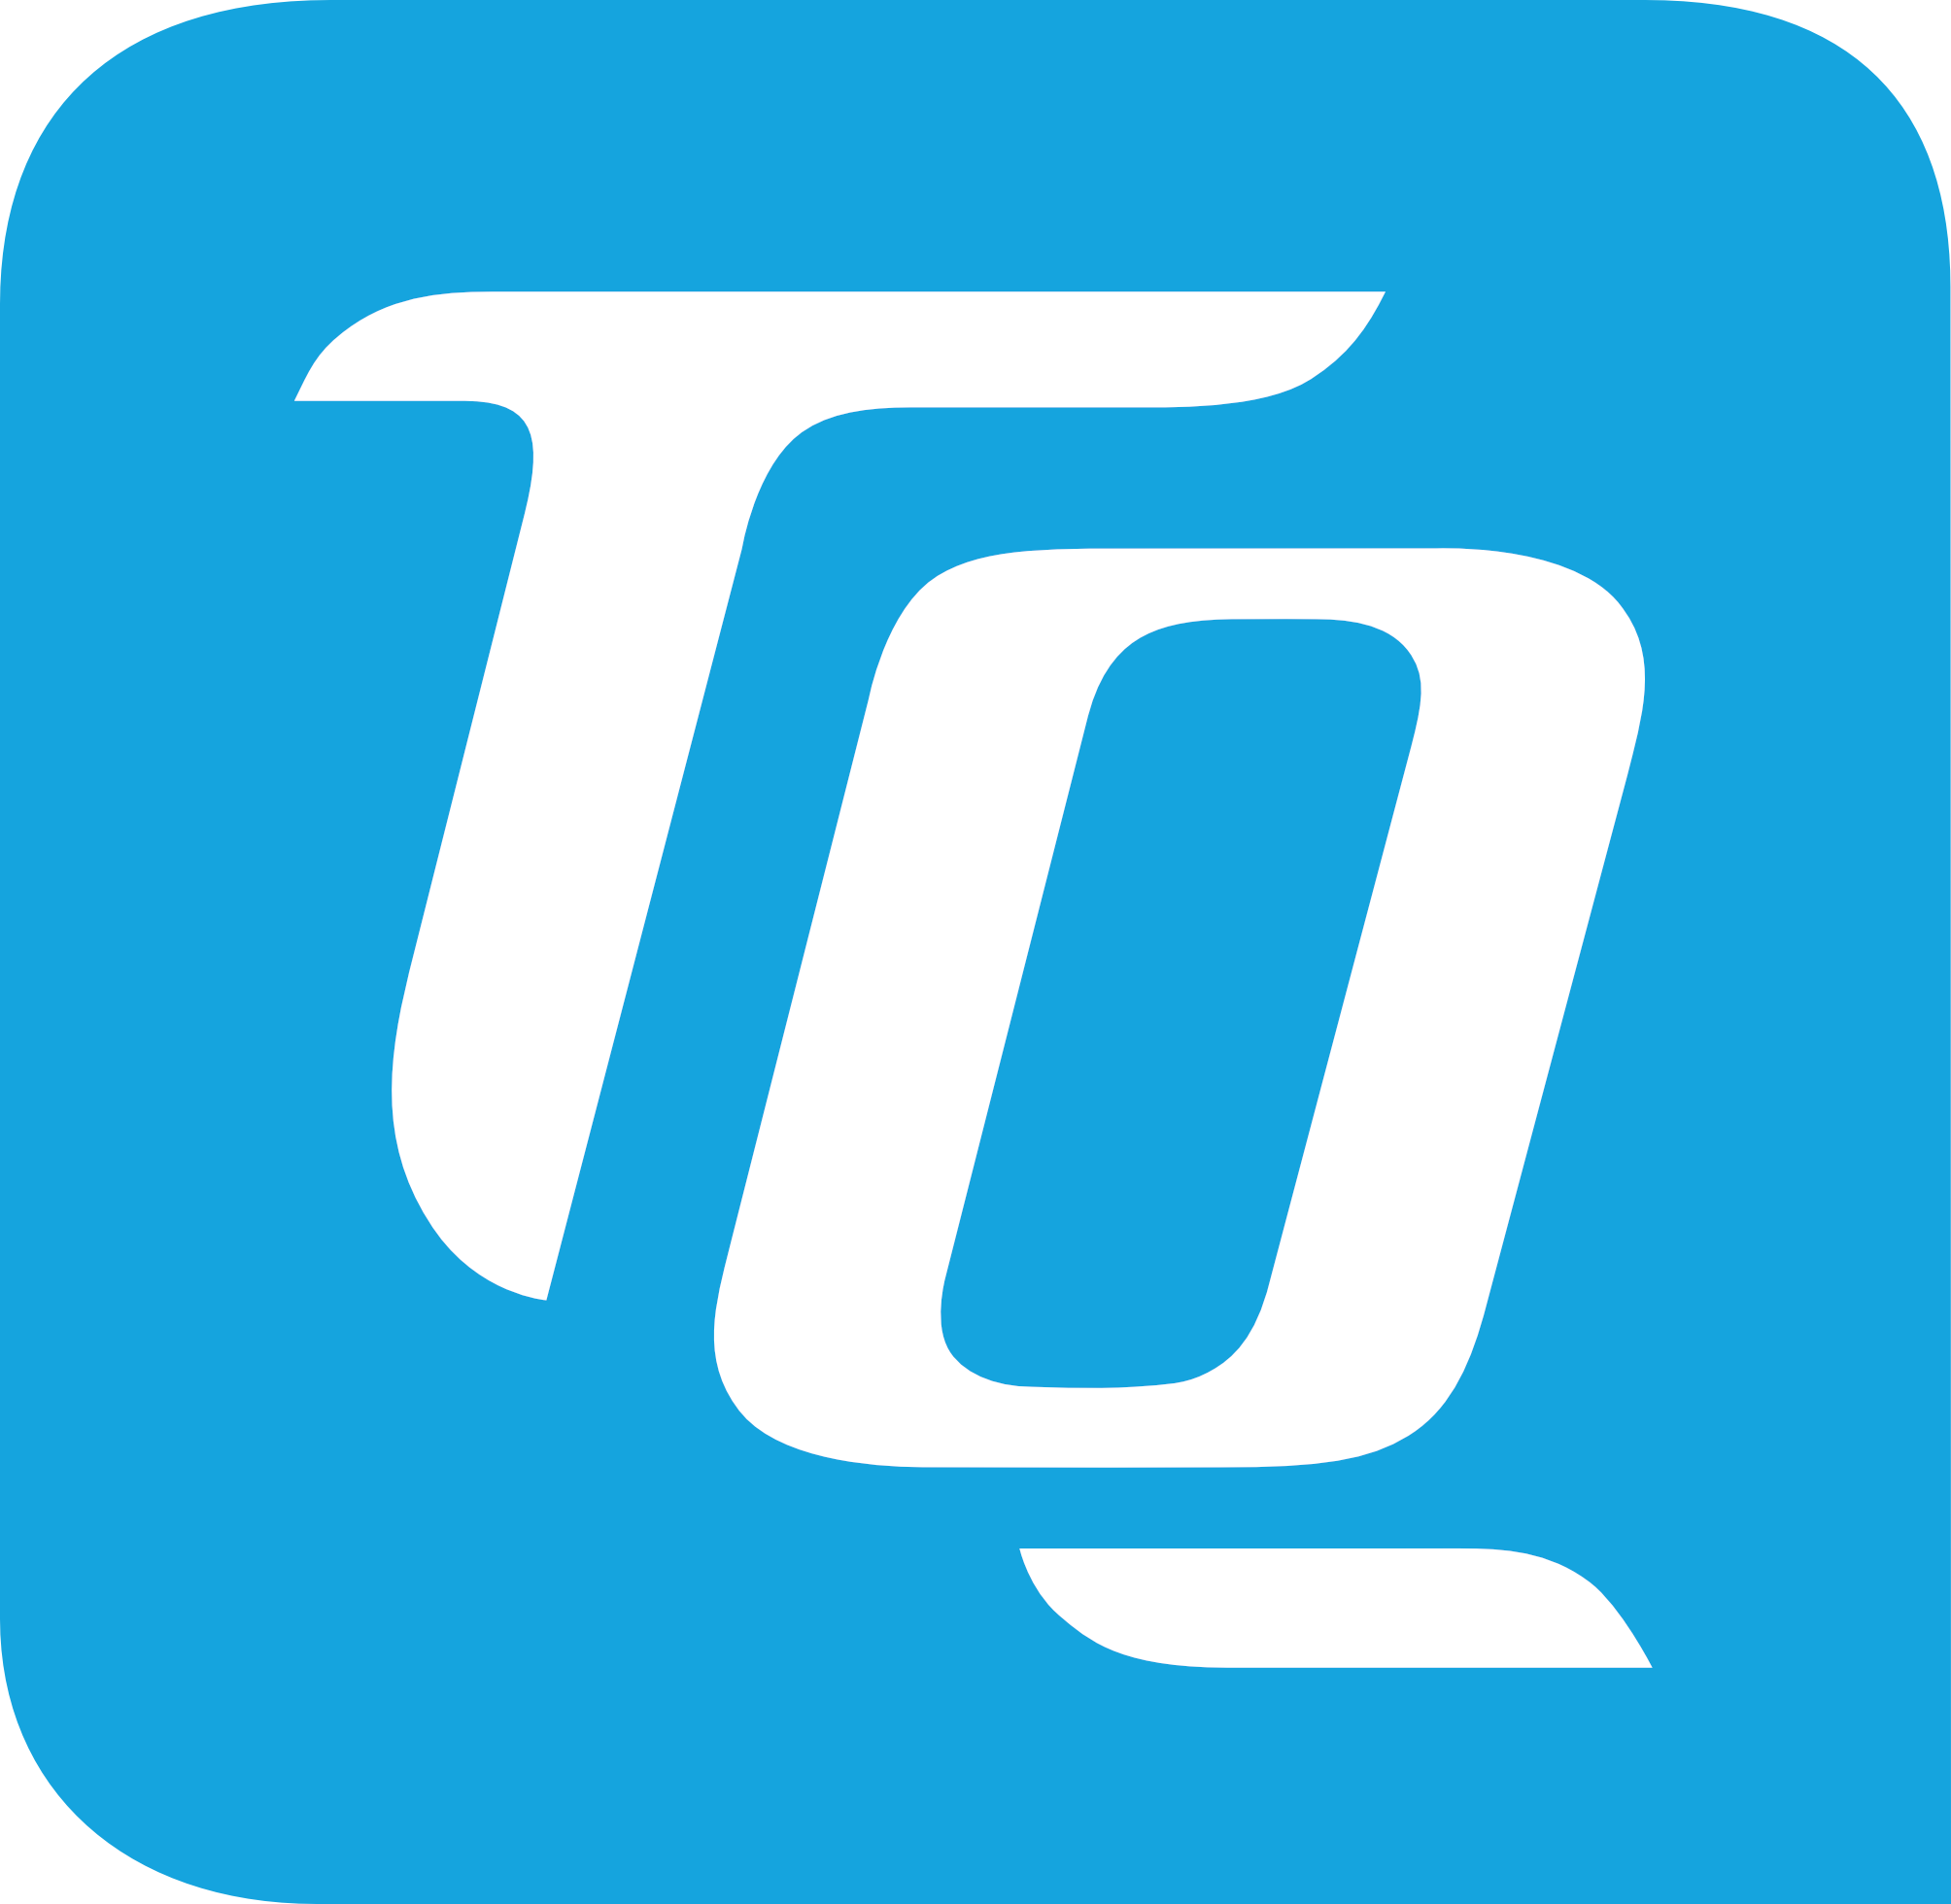 TQ-Systems Durach GmbH